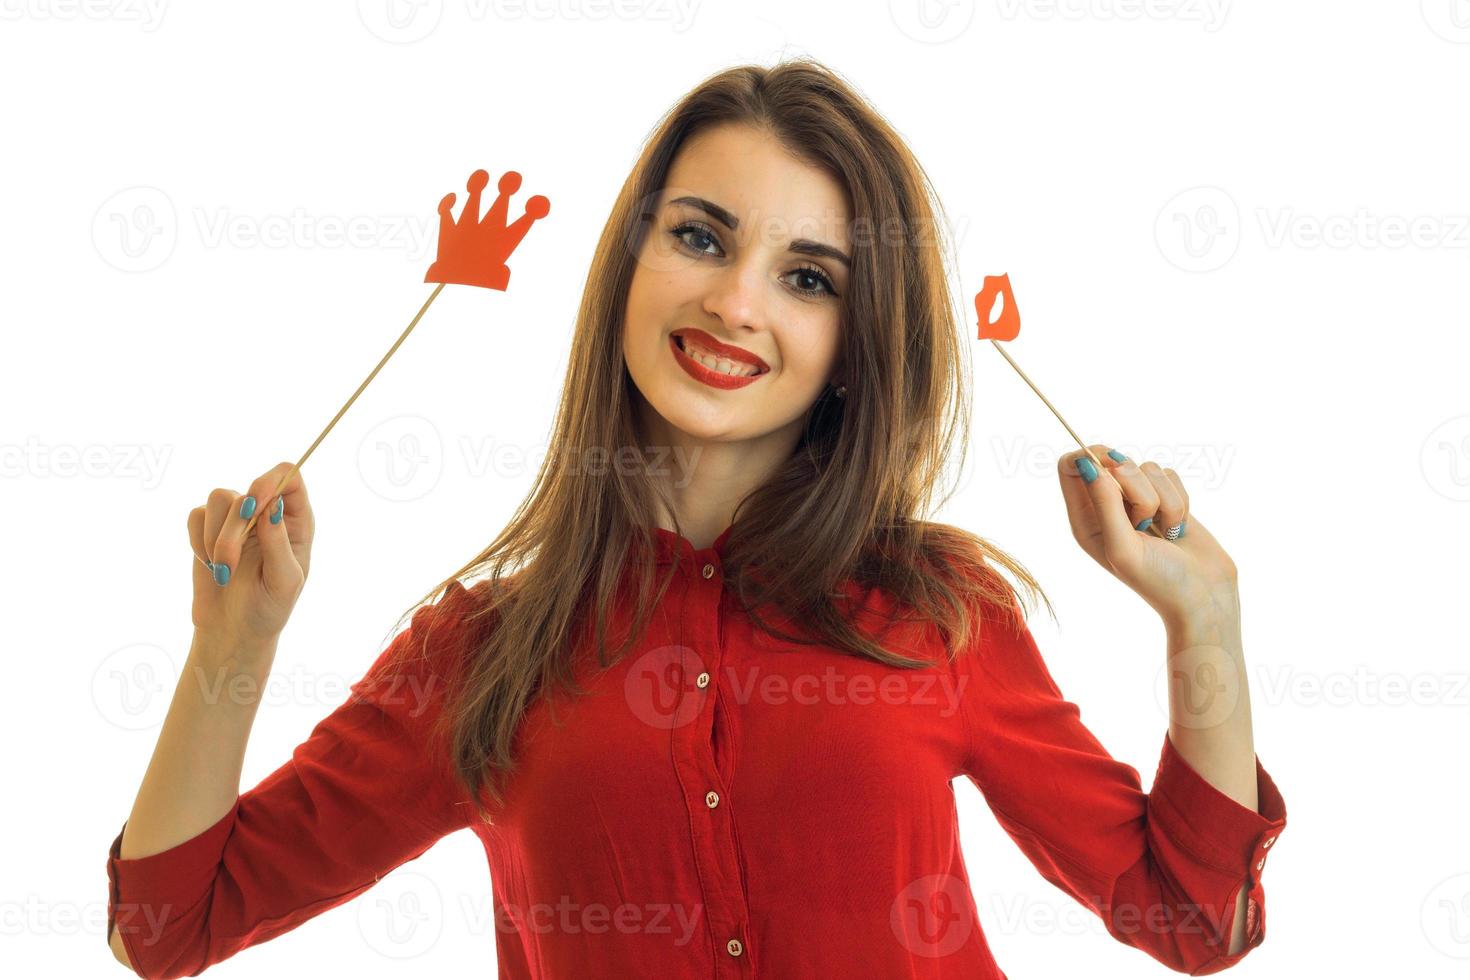 hermosa chica alegre con pintalabios rojo sostiene esponjas y corona de papel y sonriente foto